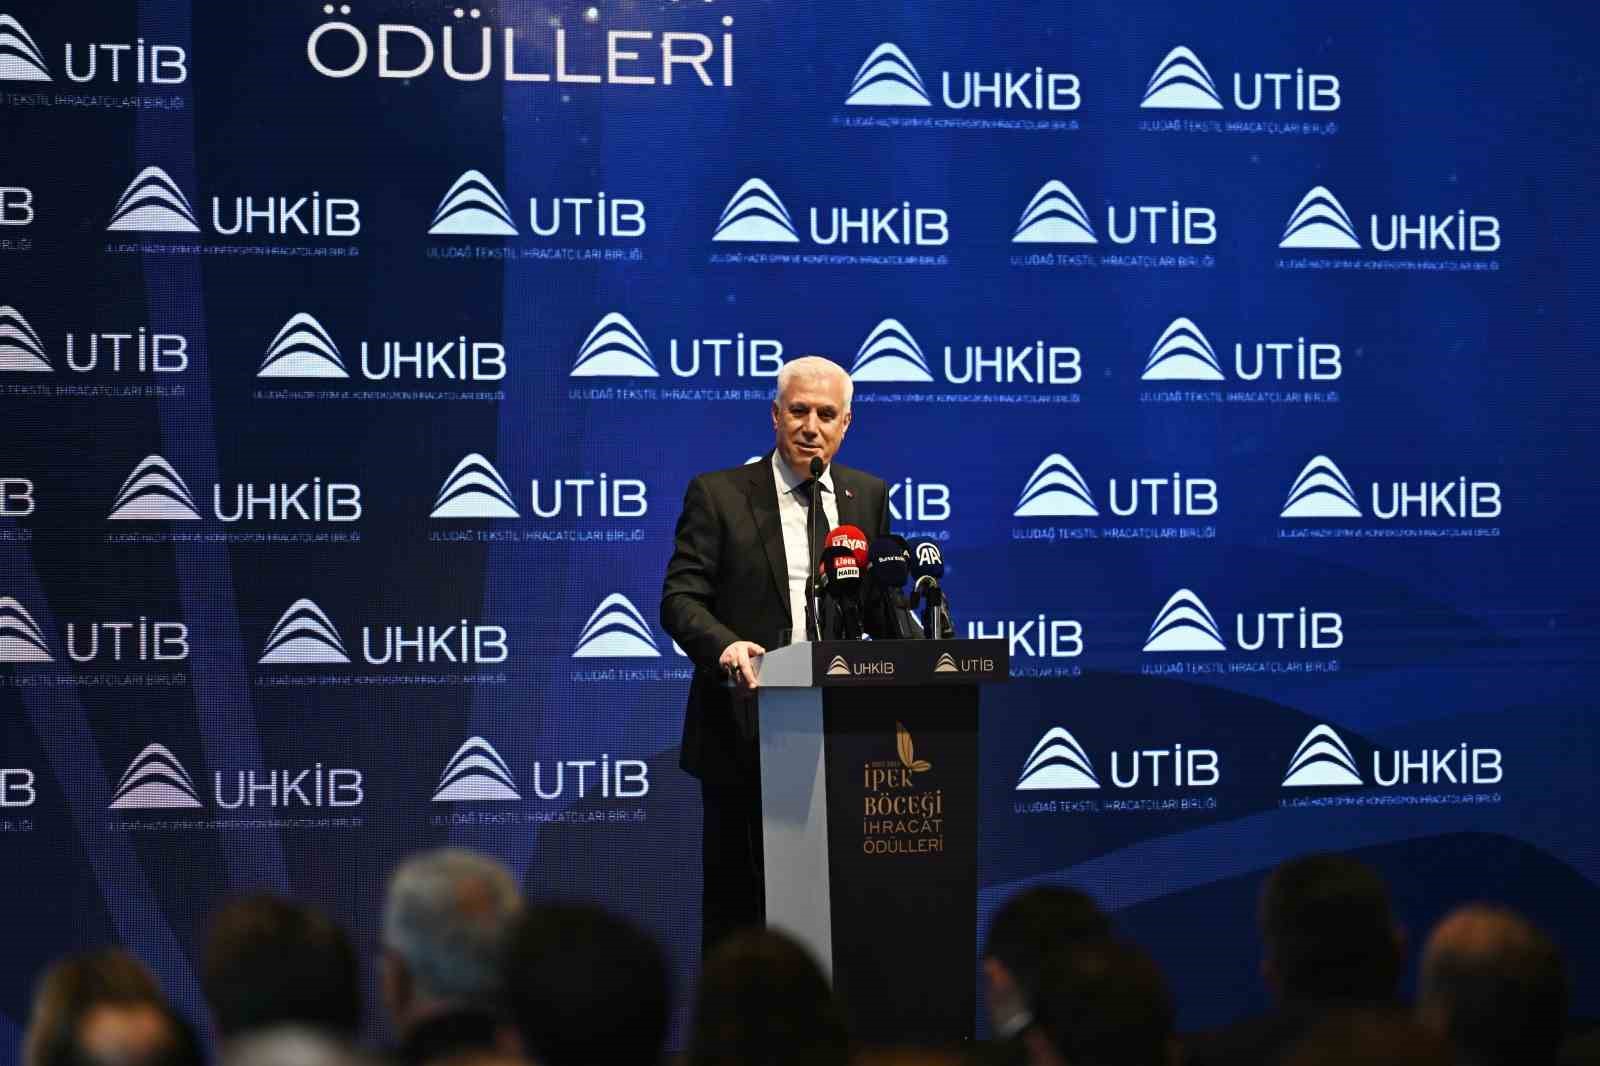 Bursa Büyükşehir Belediye Başkanı Bozbey: “İsteğimiz ülke ve dünya pazarında öne çıkmak”